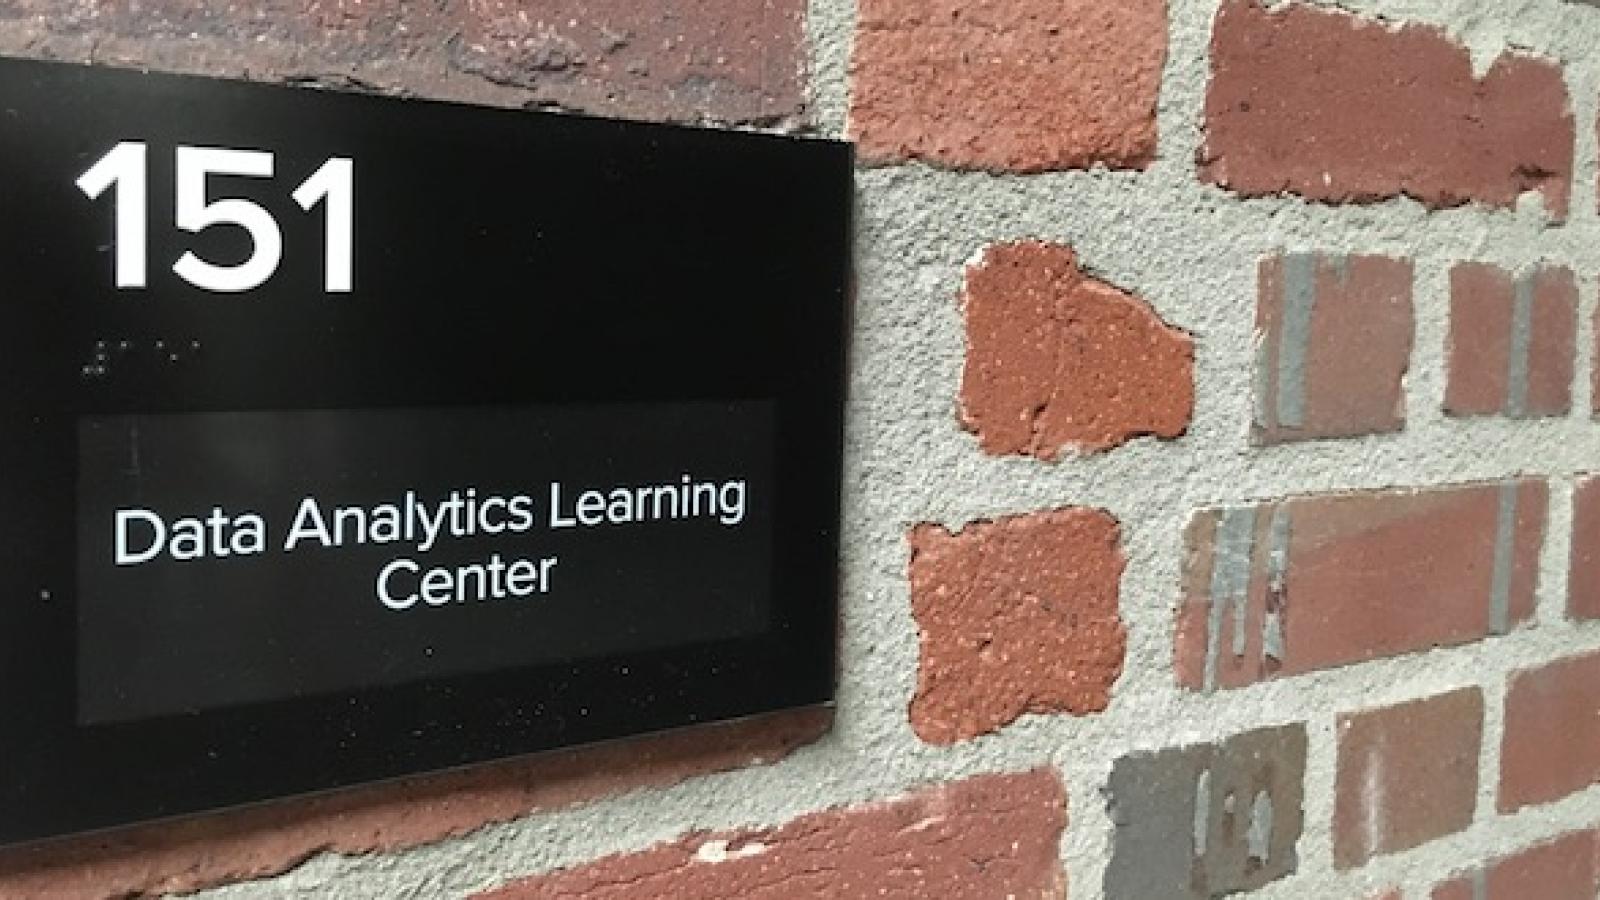 Sign outside Data Analytics Learning Center